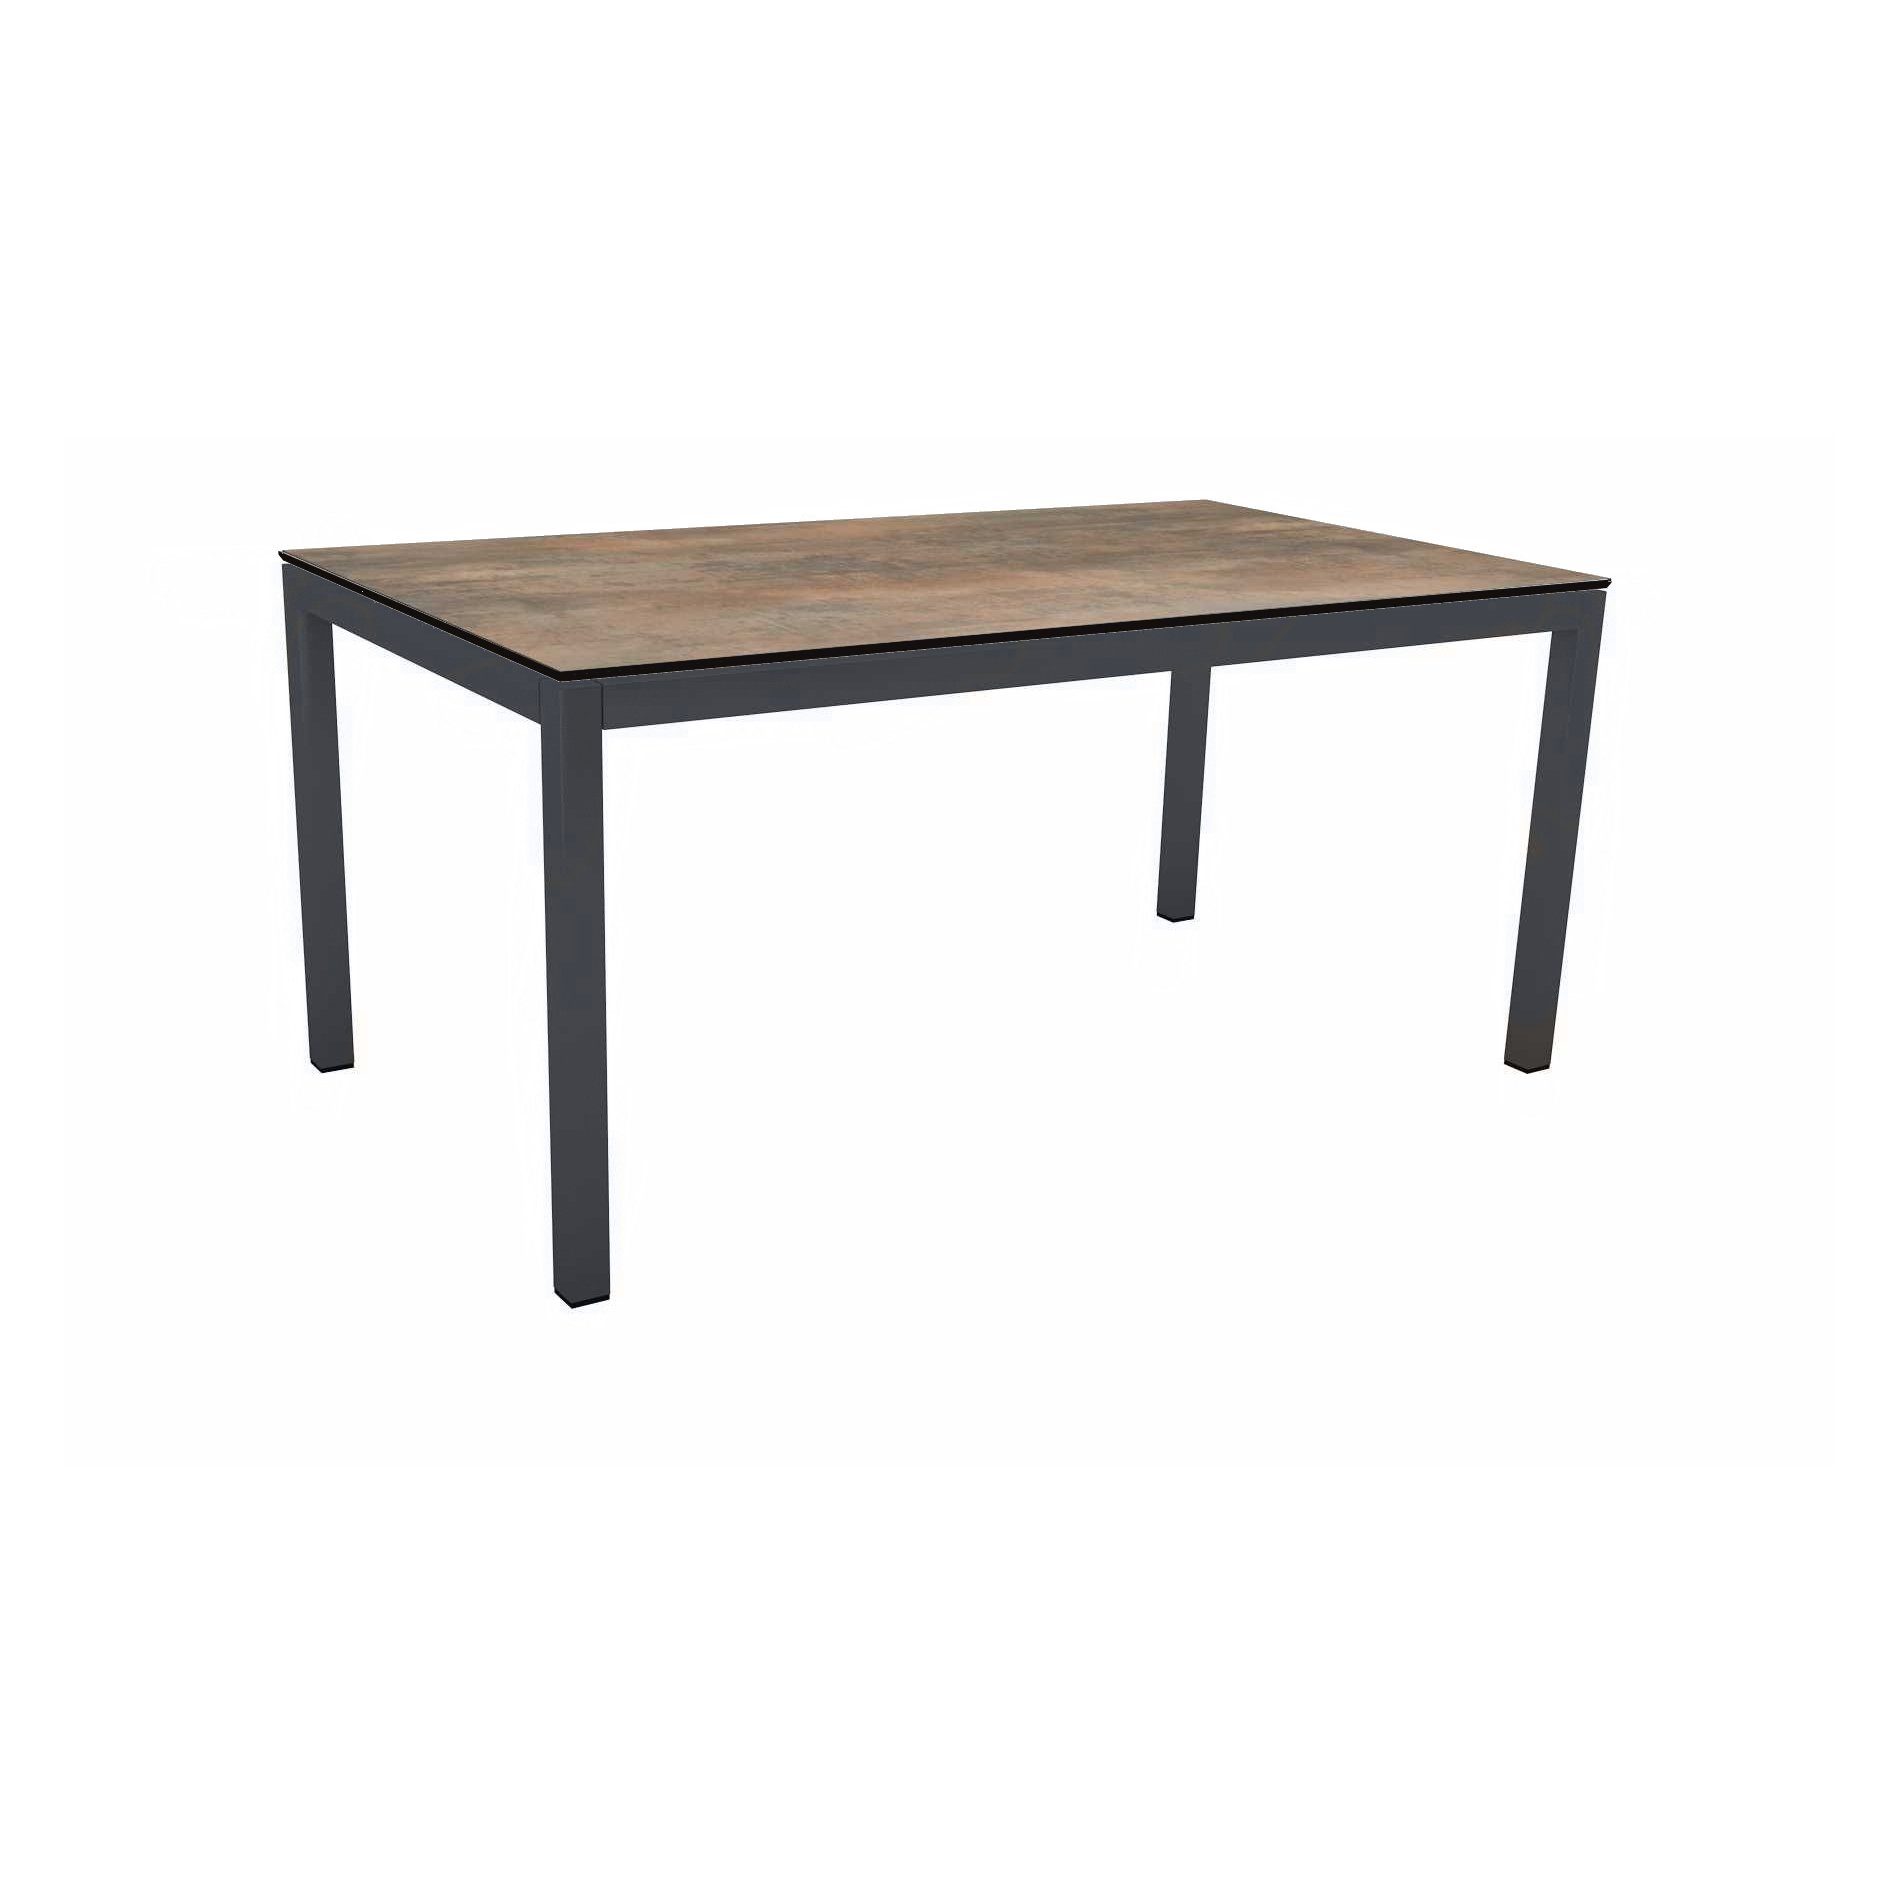 Stern Tischsystem Gartentisch, Gestell Aluminium anthrazit, Tischplatte HPL Ferro, Maße: 160x90 cm